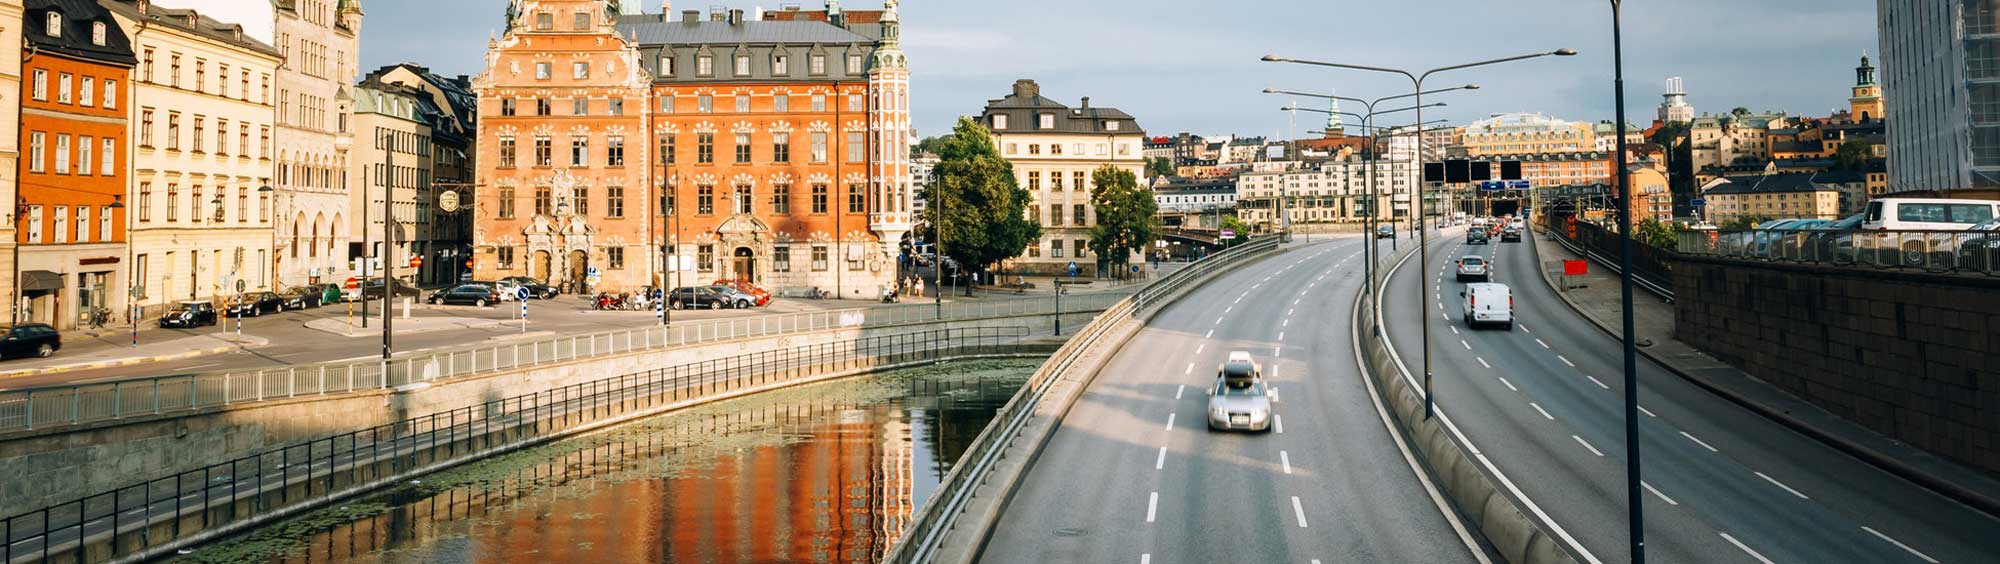 Trafik i Stockholm.